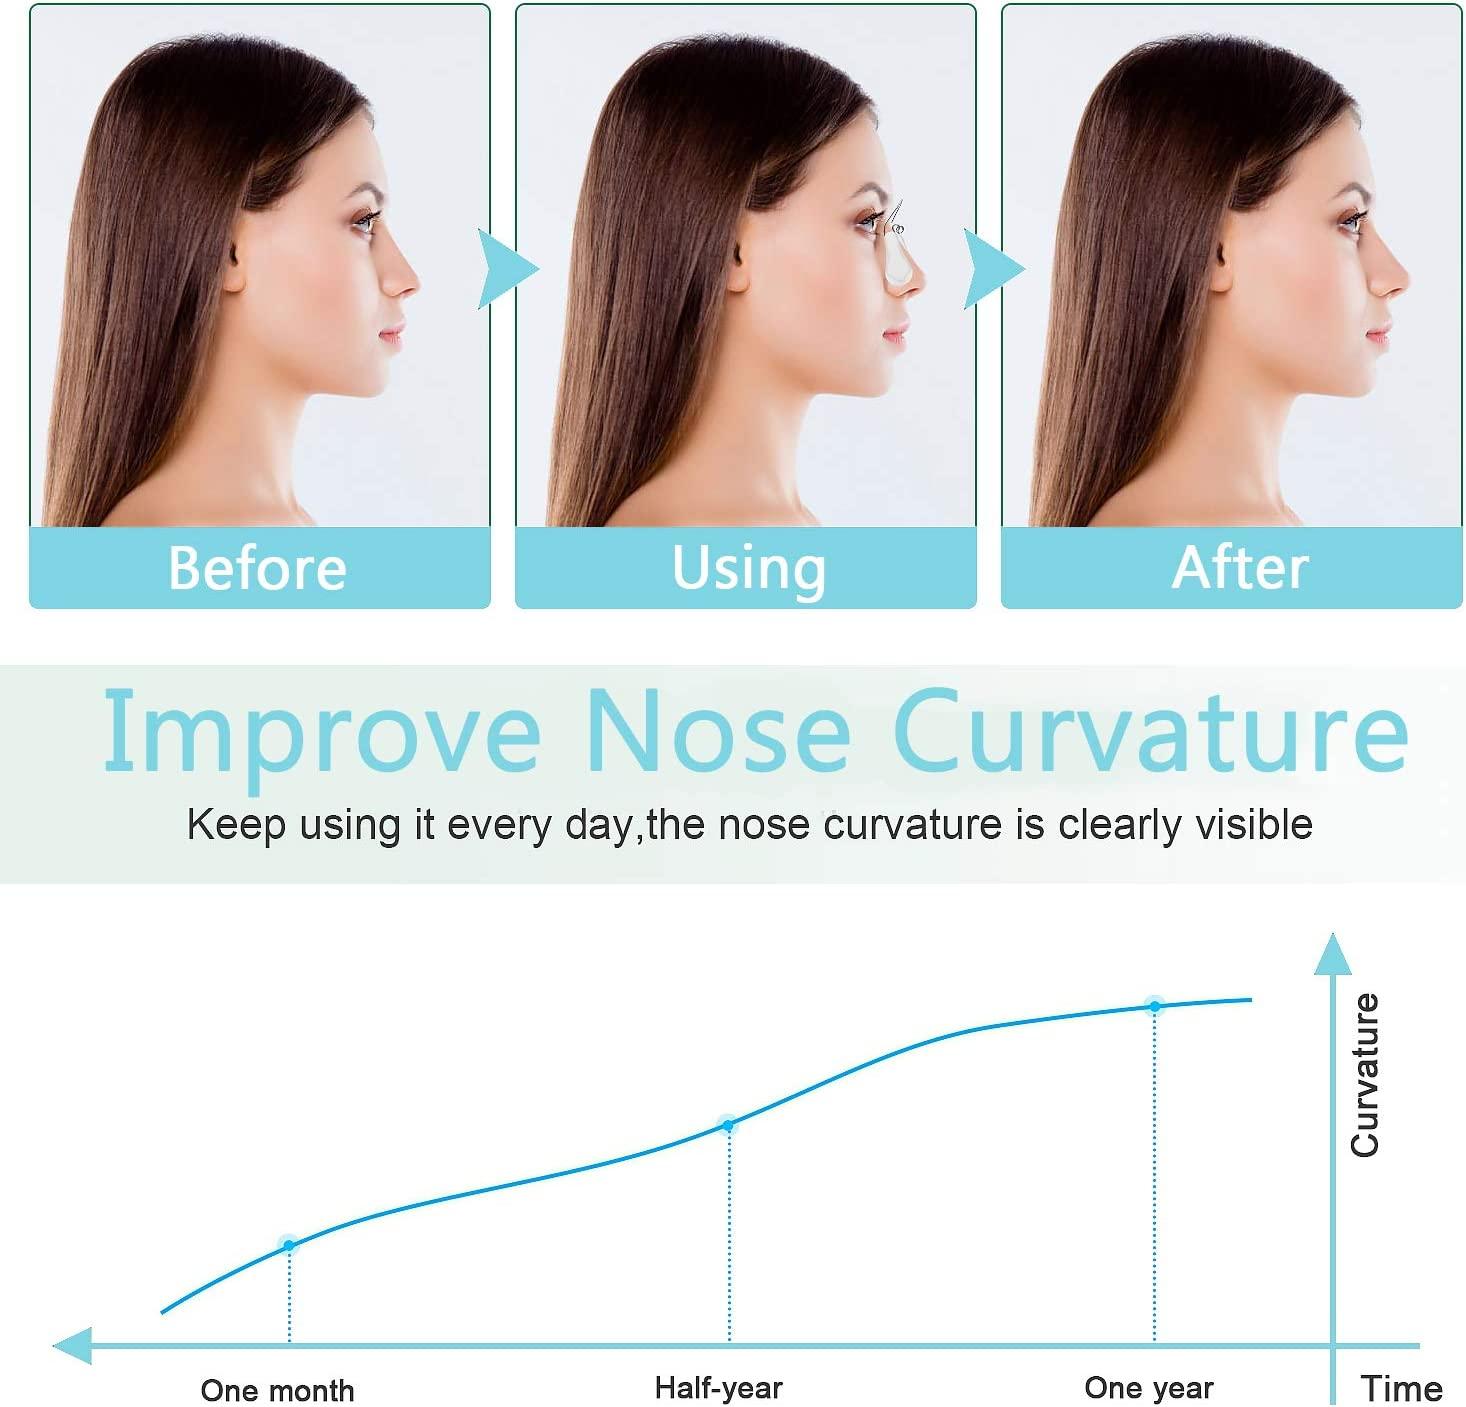 Nose Shaper Clip Nose Up Beauty Bridge Enhancer Slimmer Kit Lifter